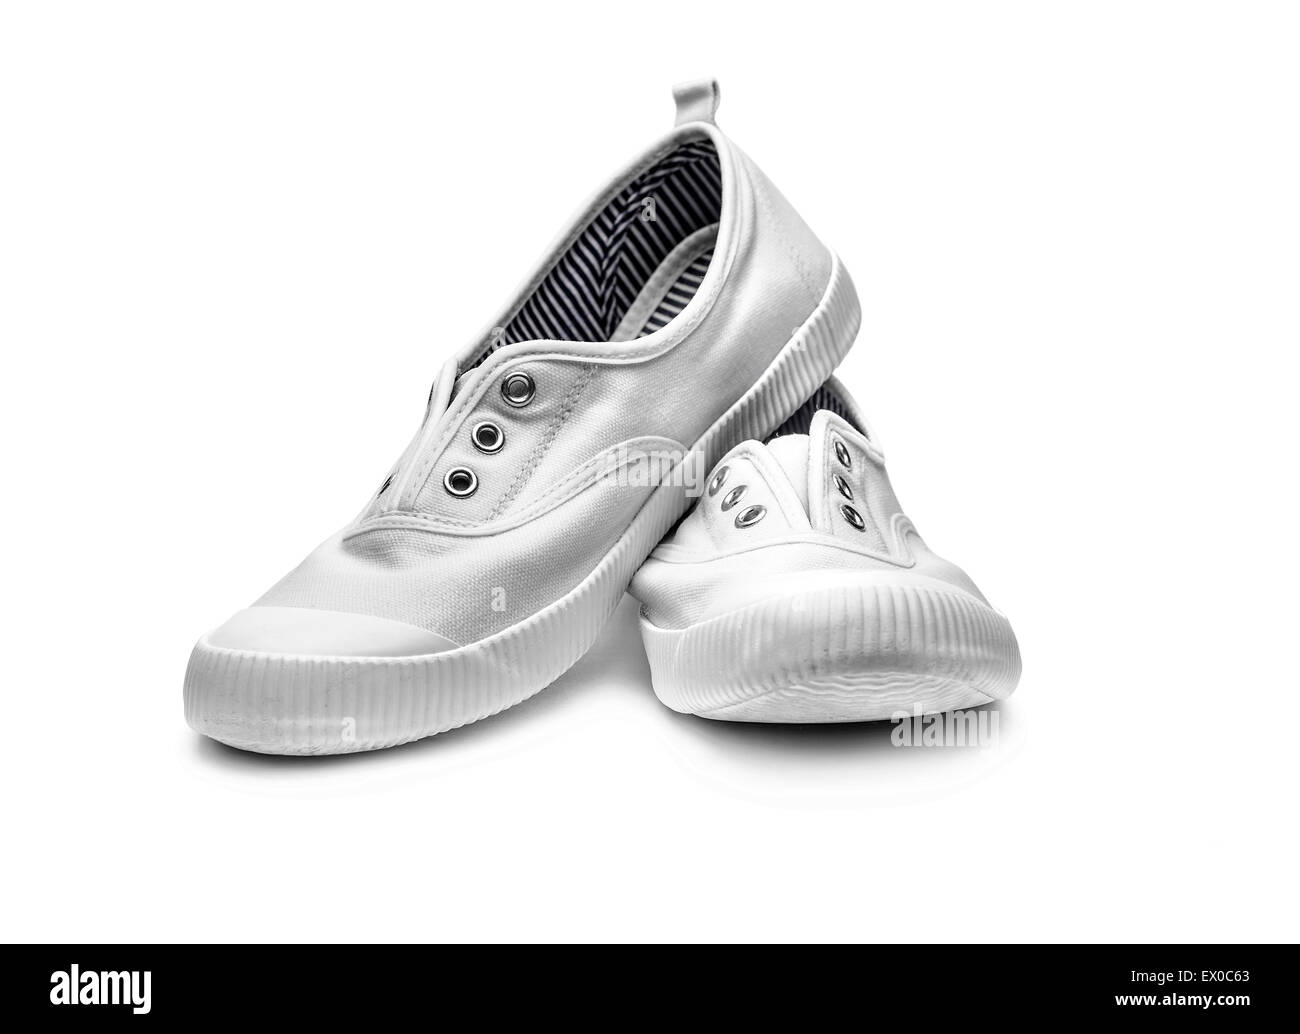 White sneakers Stock Photo